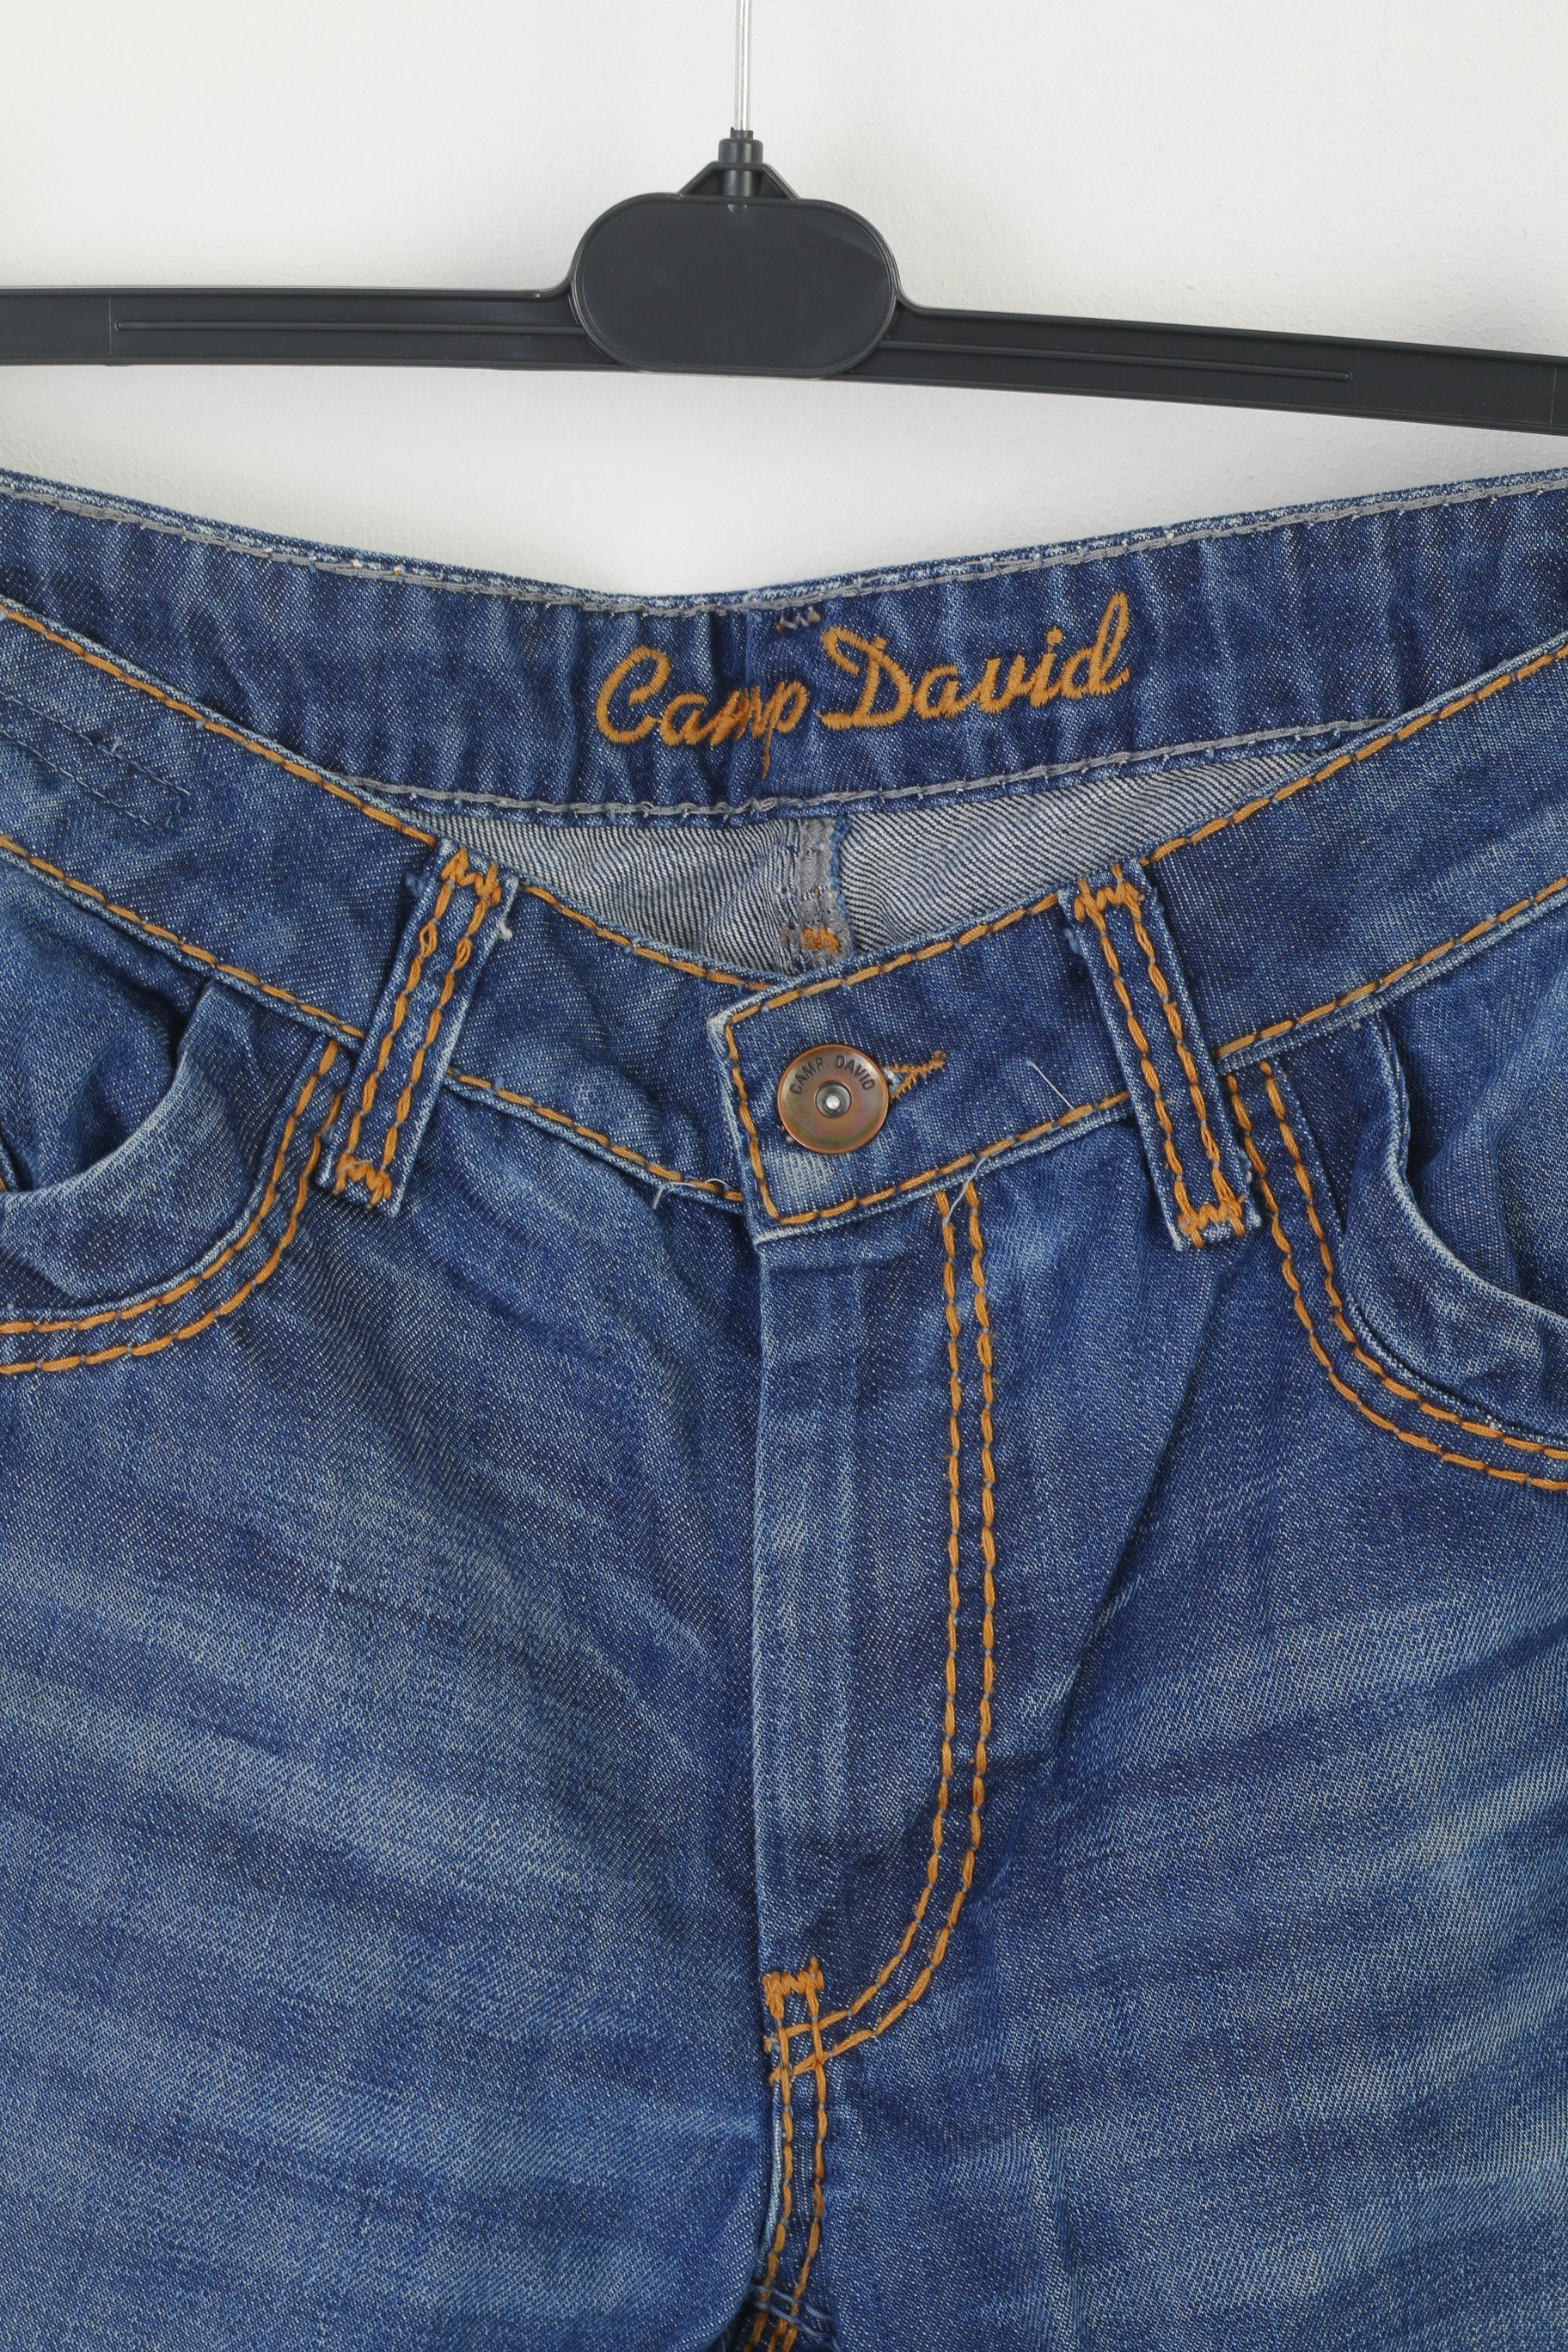 Camp David Men – Long Leg Cotton Jeans Navy P Straight Trousers Denim 36 Clothes Retrospect